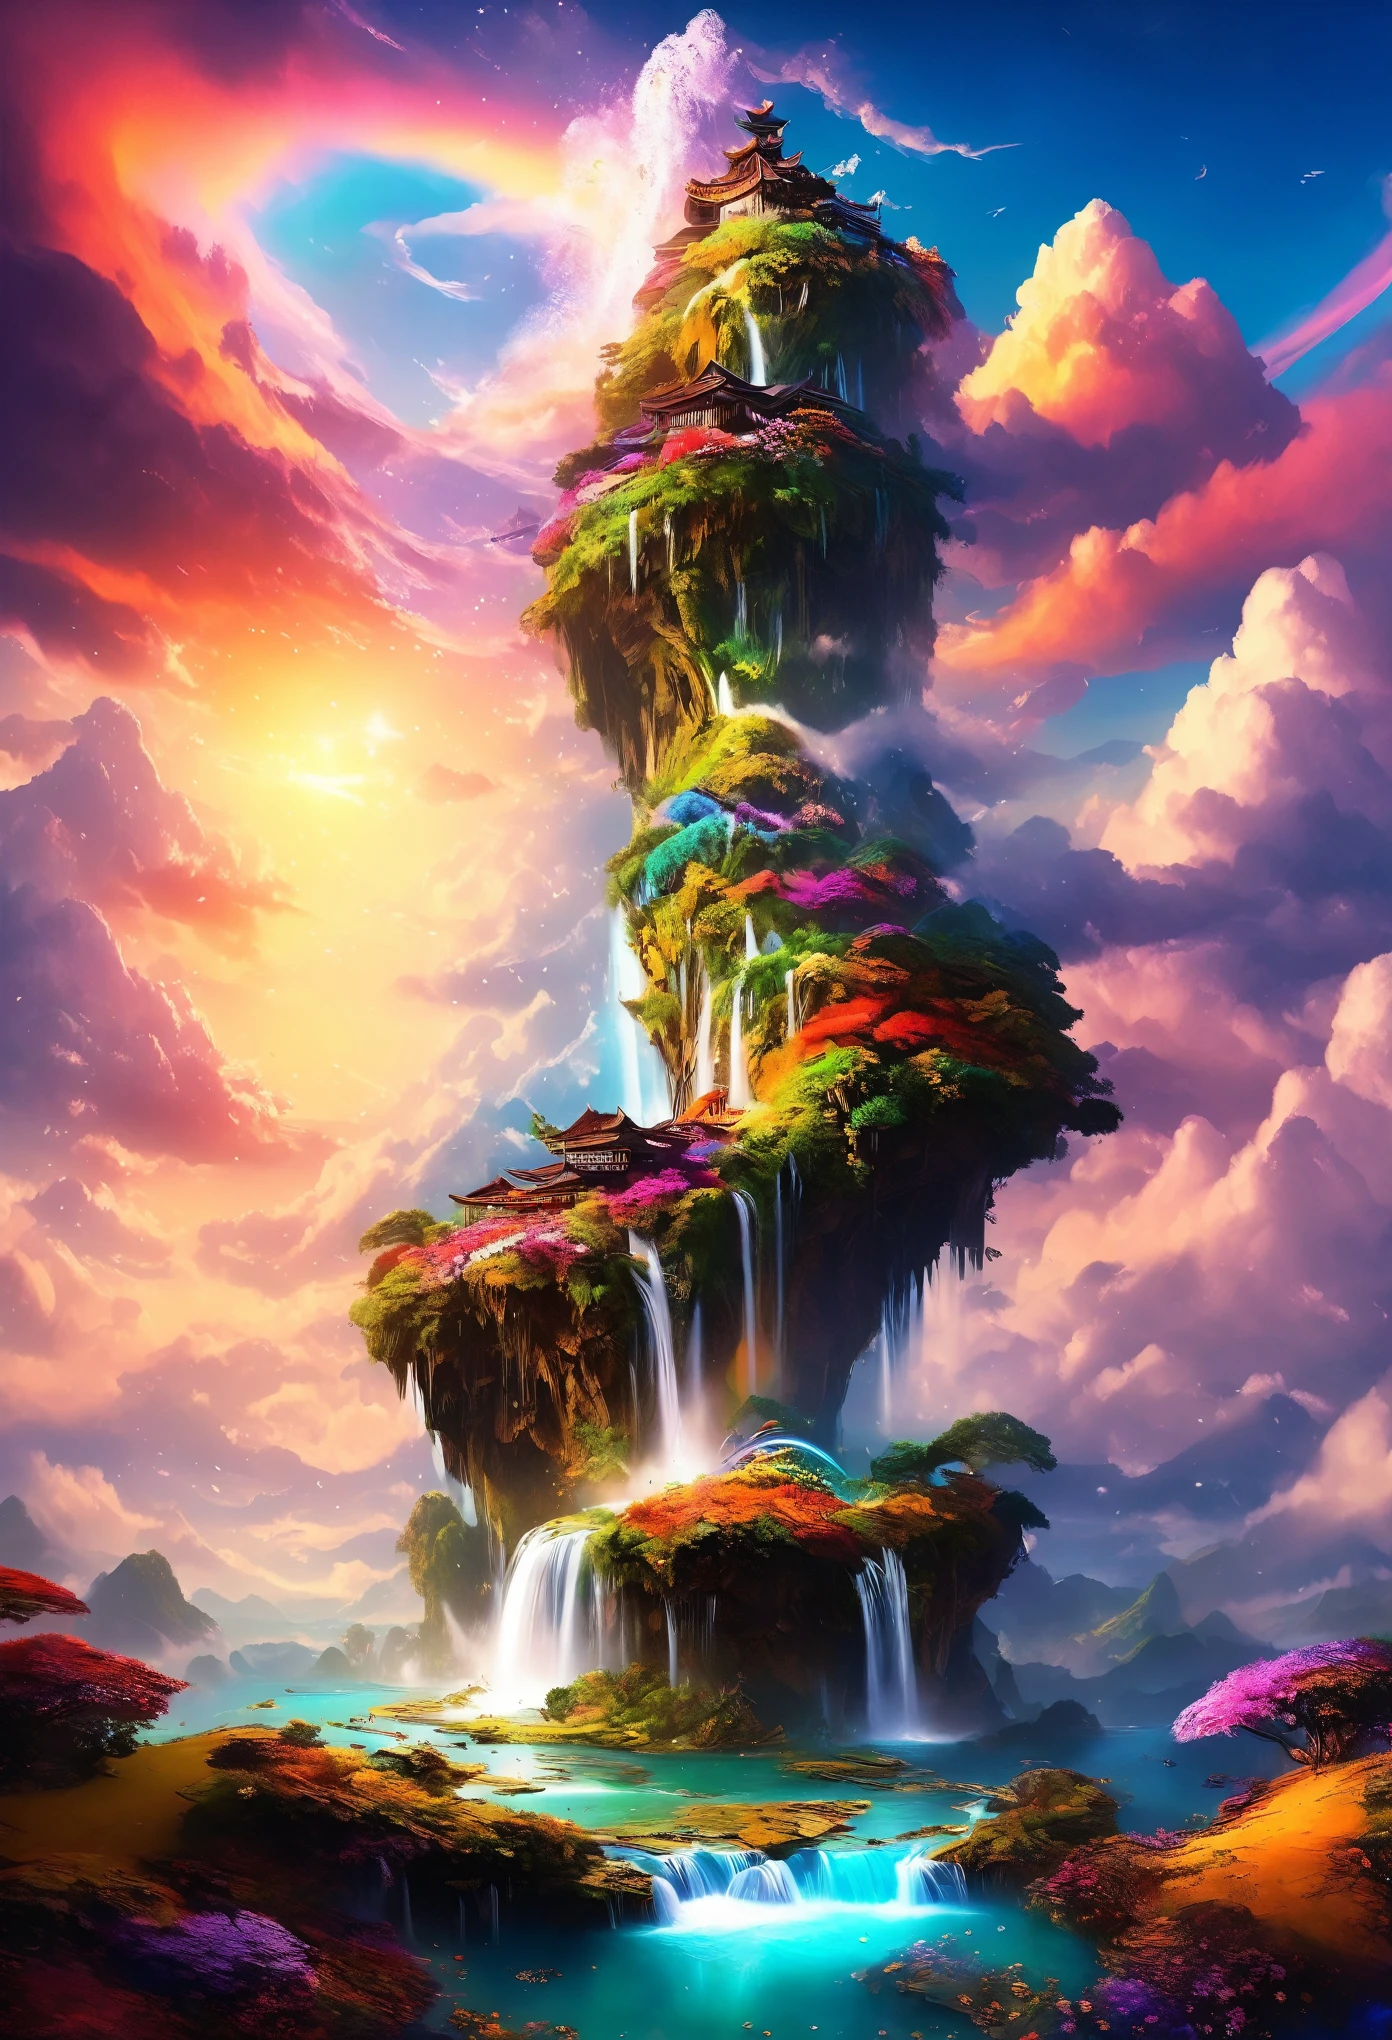 obra de arte, mais alta qualidade, Melhor qualidade, Ilha Voadora, Cachoeira caindo da ilha, mundo da fantasia, Panorama magnífico, Nuvens multicoloridas, cores chamativas,